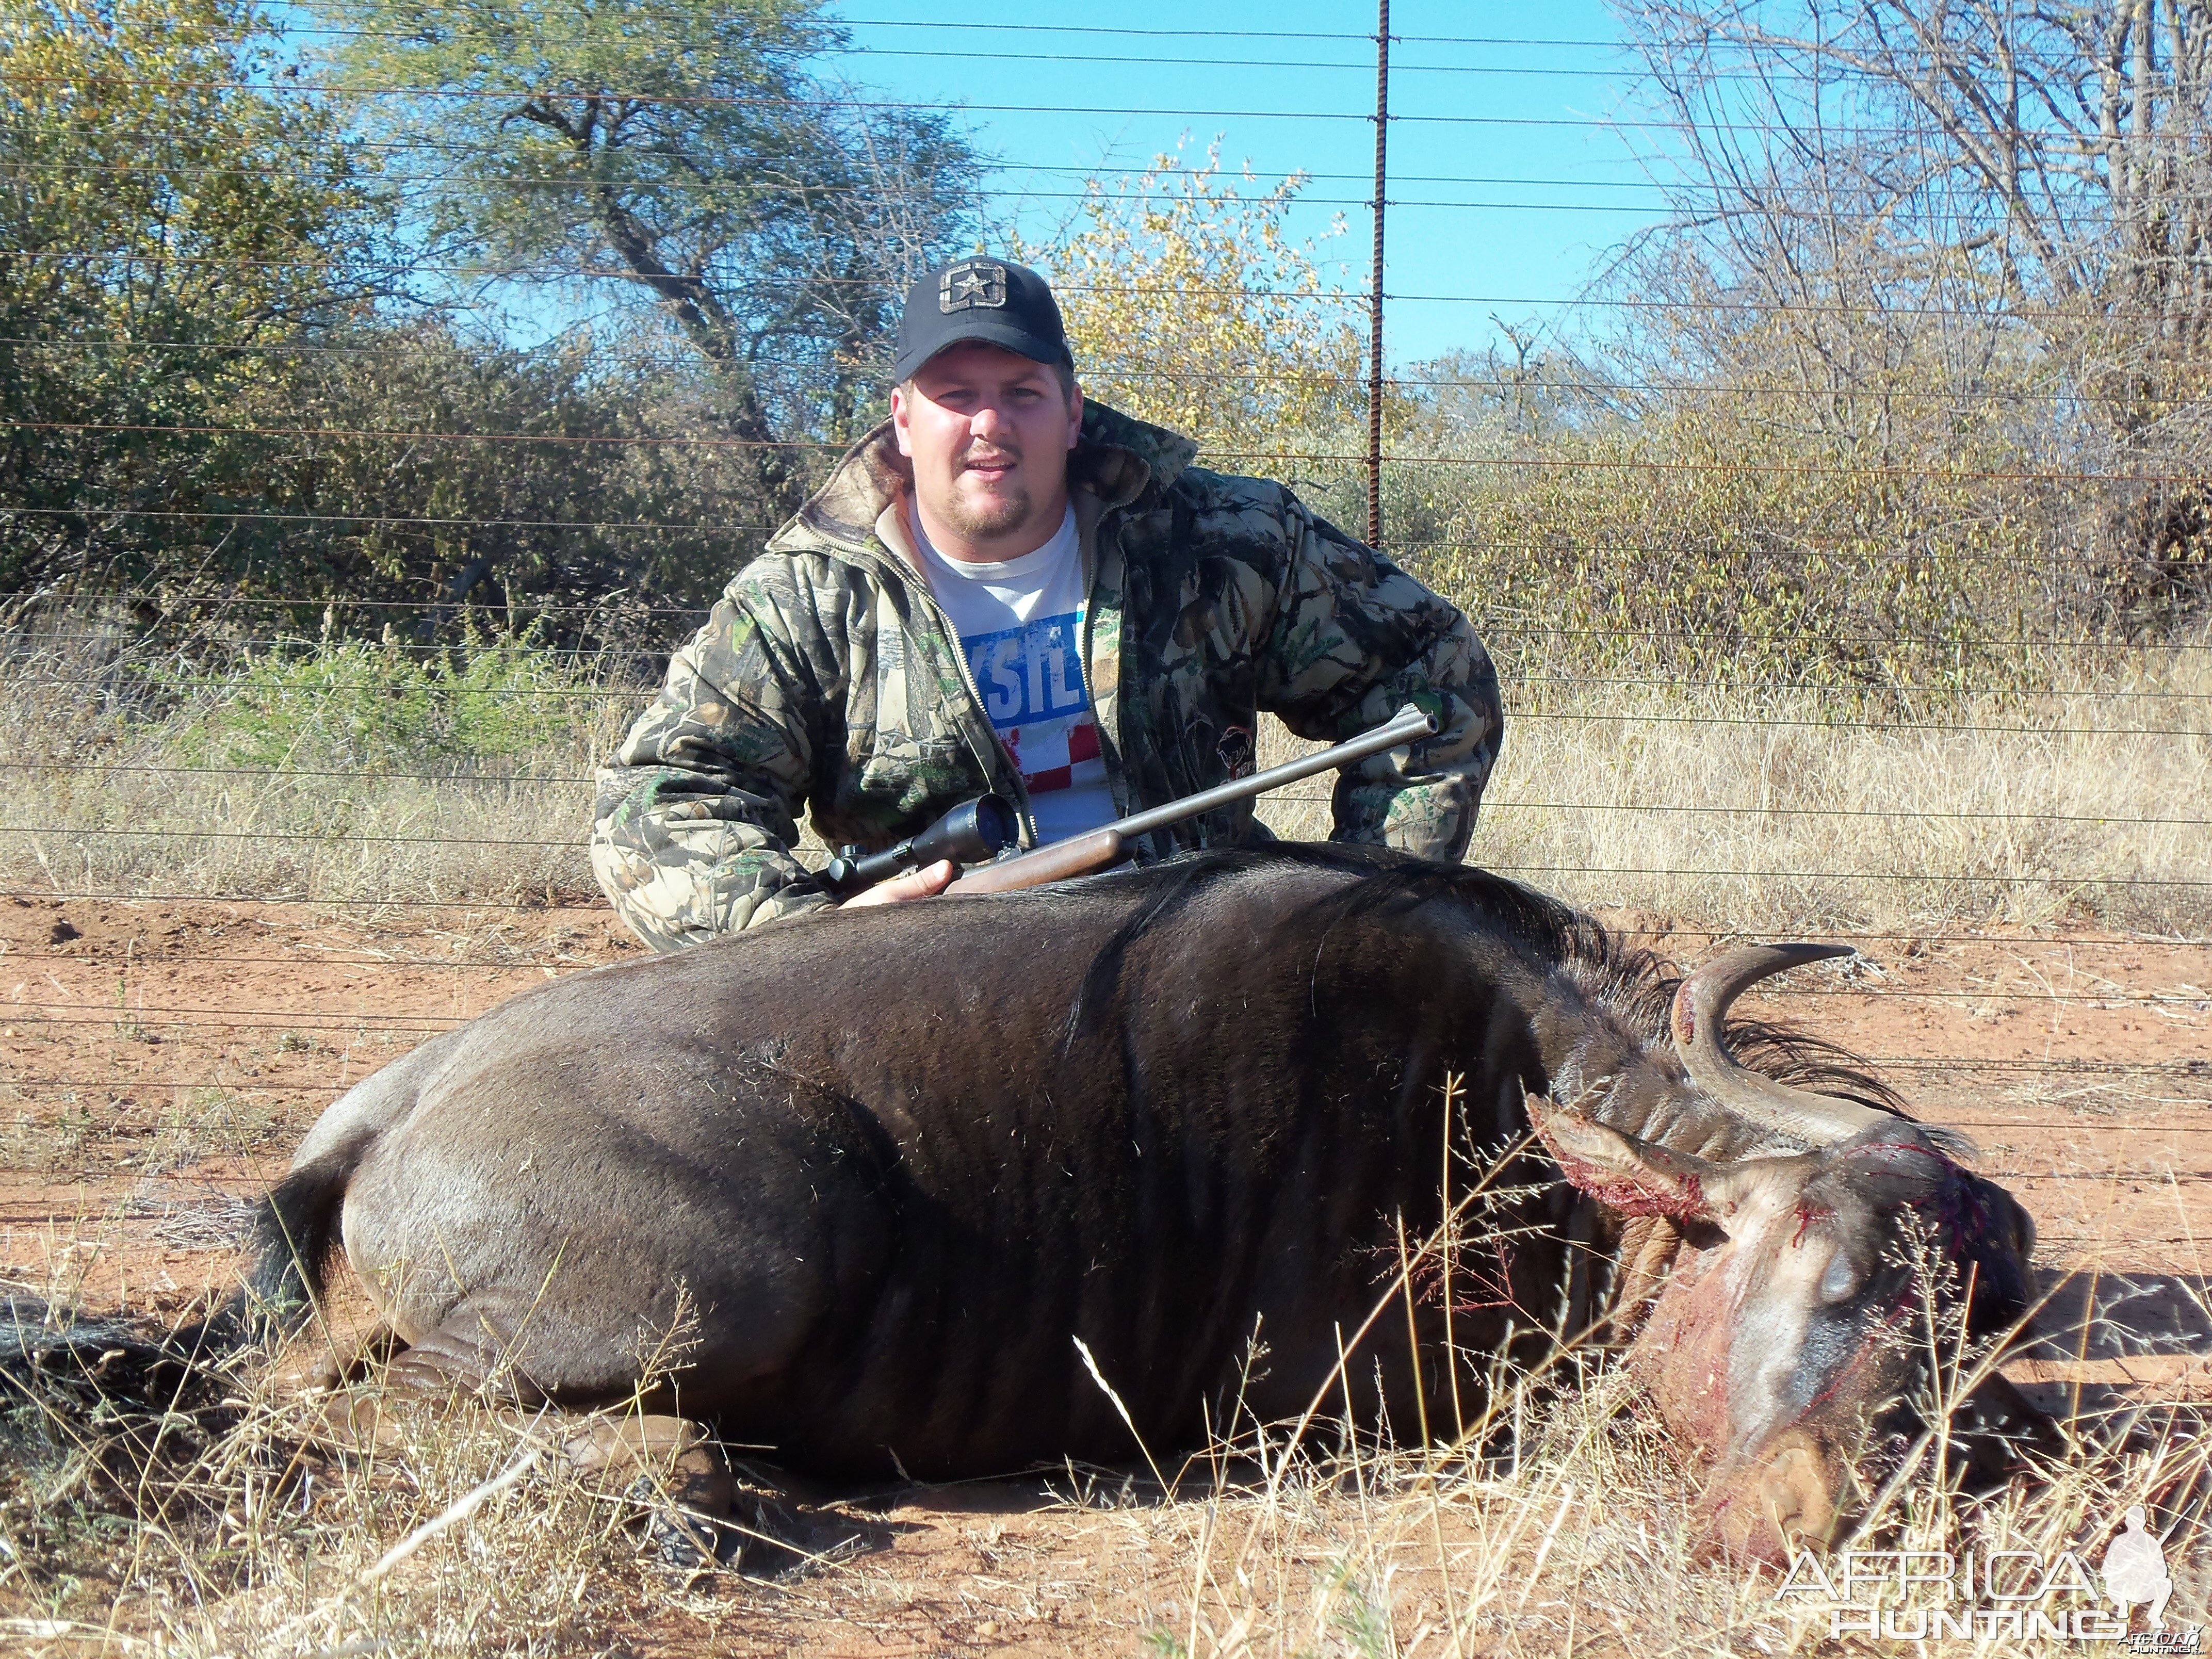 Limpopo Wildebeest